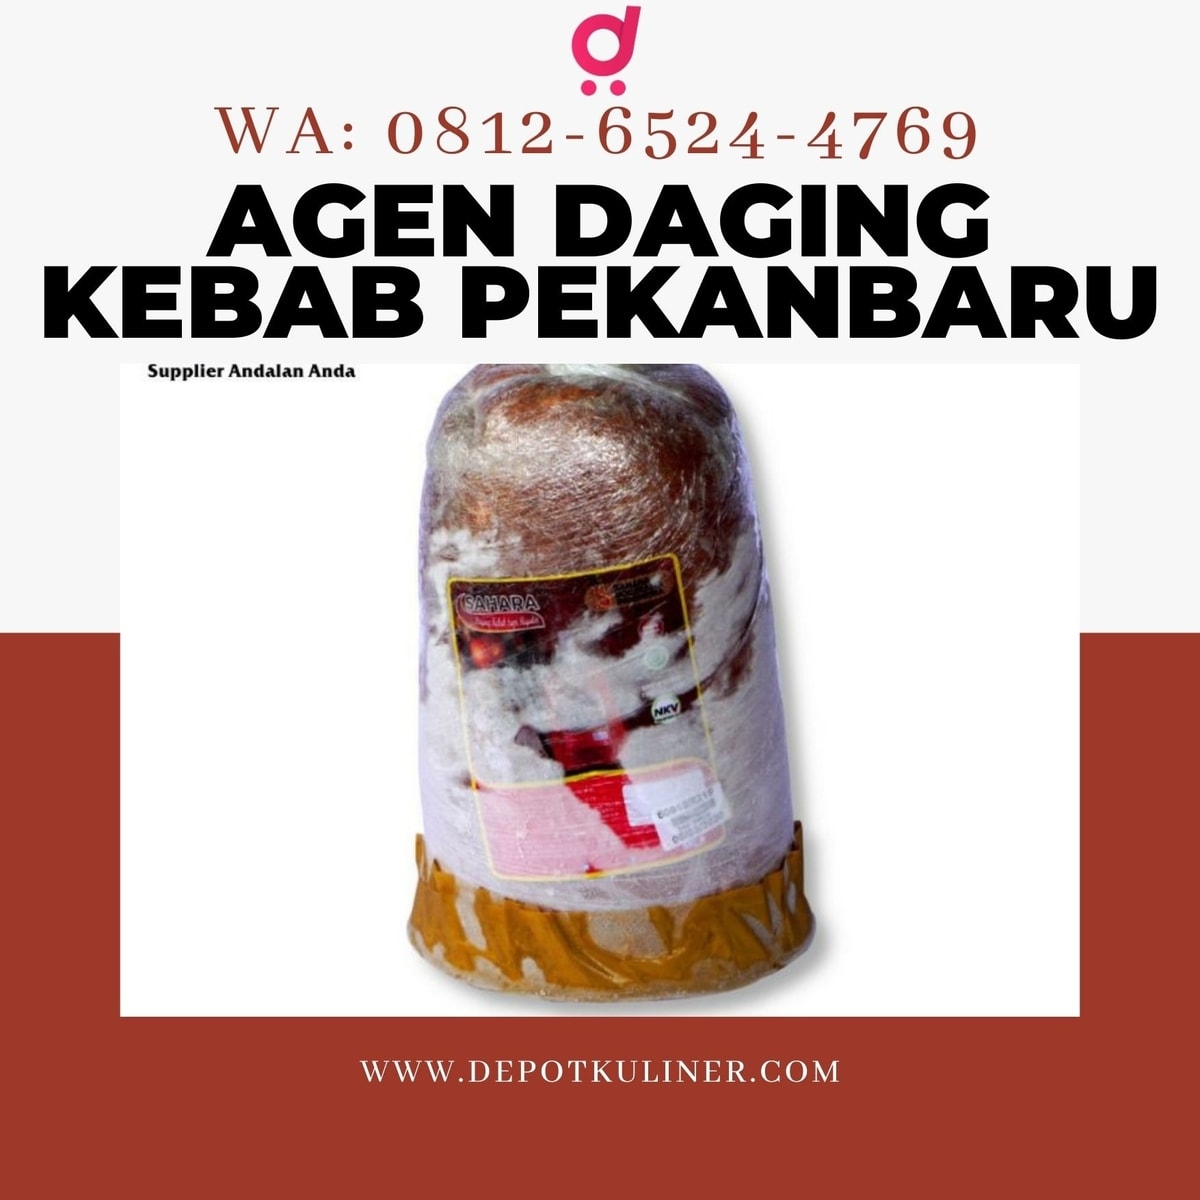 HARGA TERJANGKAU, Call 0812-6524-4769, Agen Daging Kebab Pekanbaru